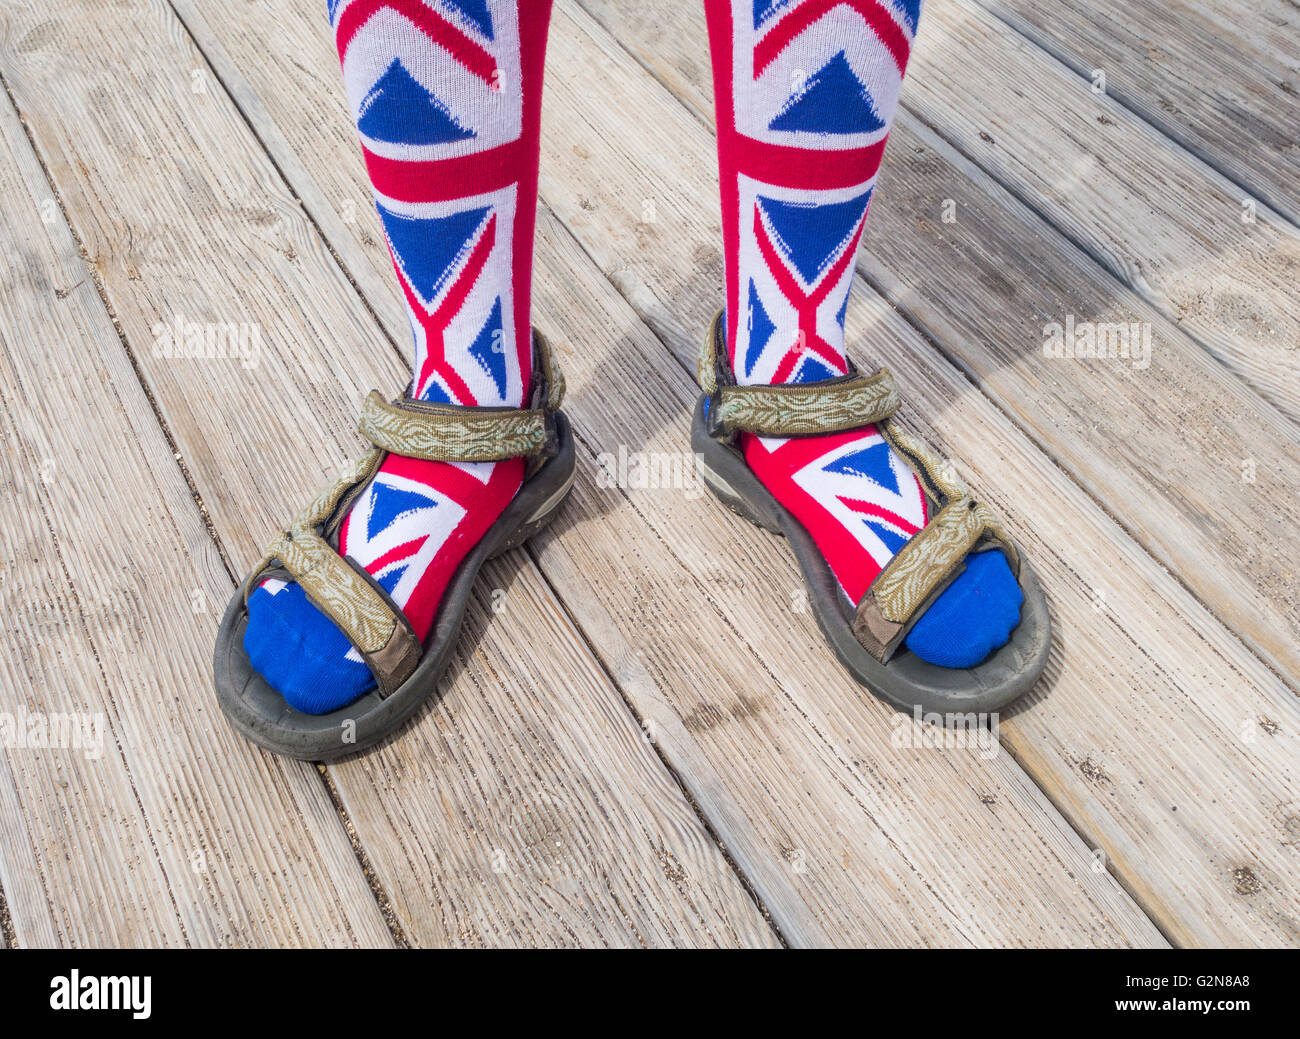 Trägers Gösch Socken mit Sandalen. Einsatzmöglichkeiten: schlechte Mode/Briten im Ausland /... Konzept Bild. Stockfoto